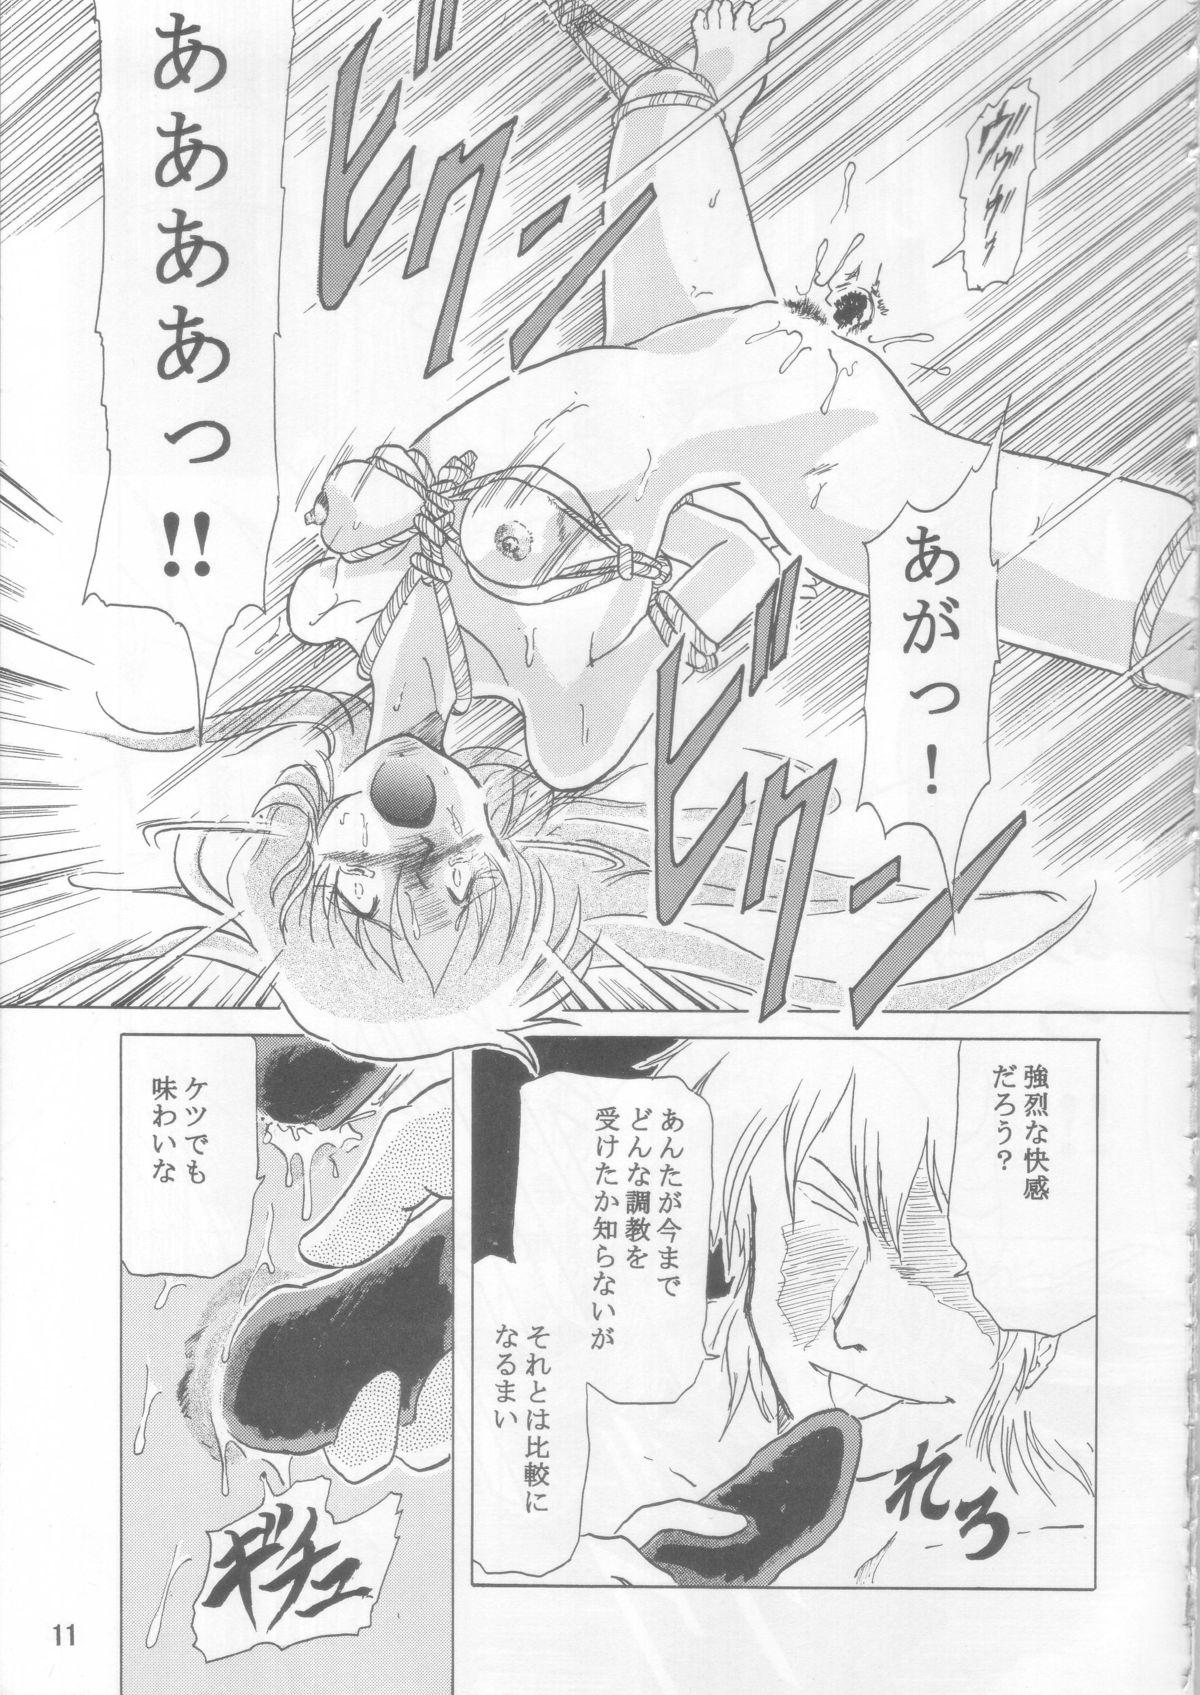 Mas Ceila sama Jiyuujizai 3 - Aura battler dunbine Romance - Page 10